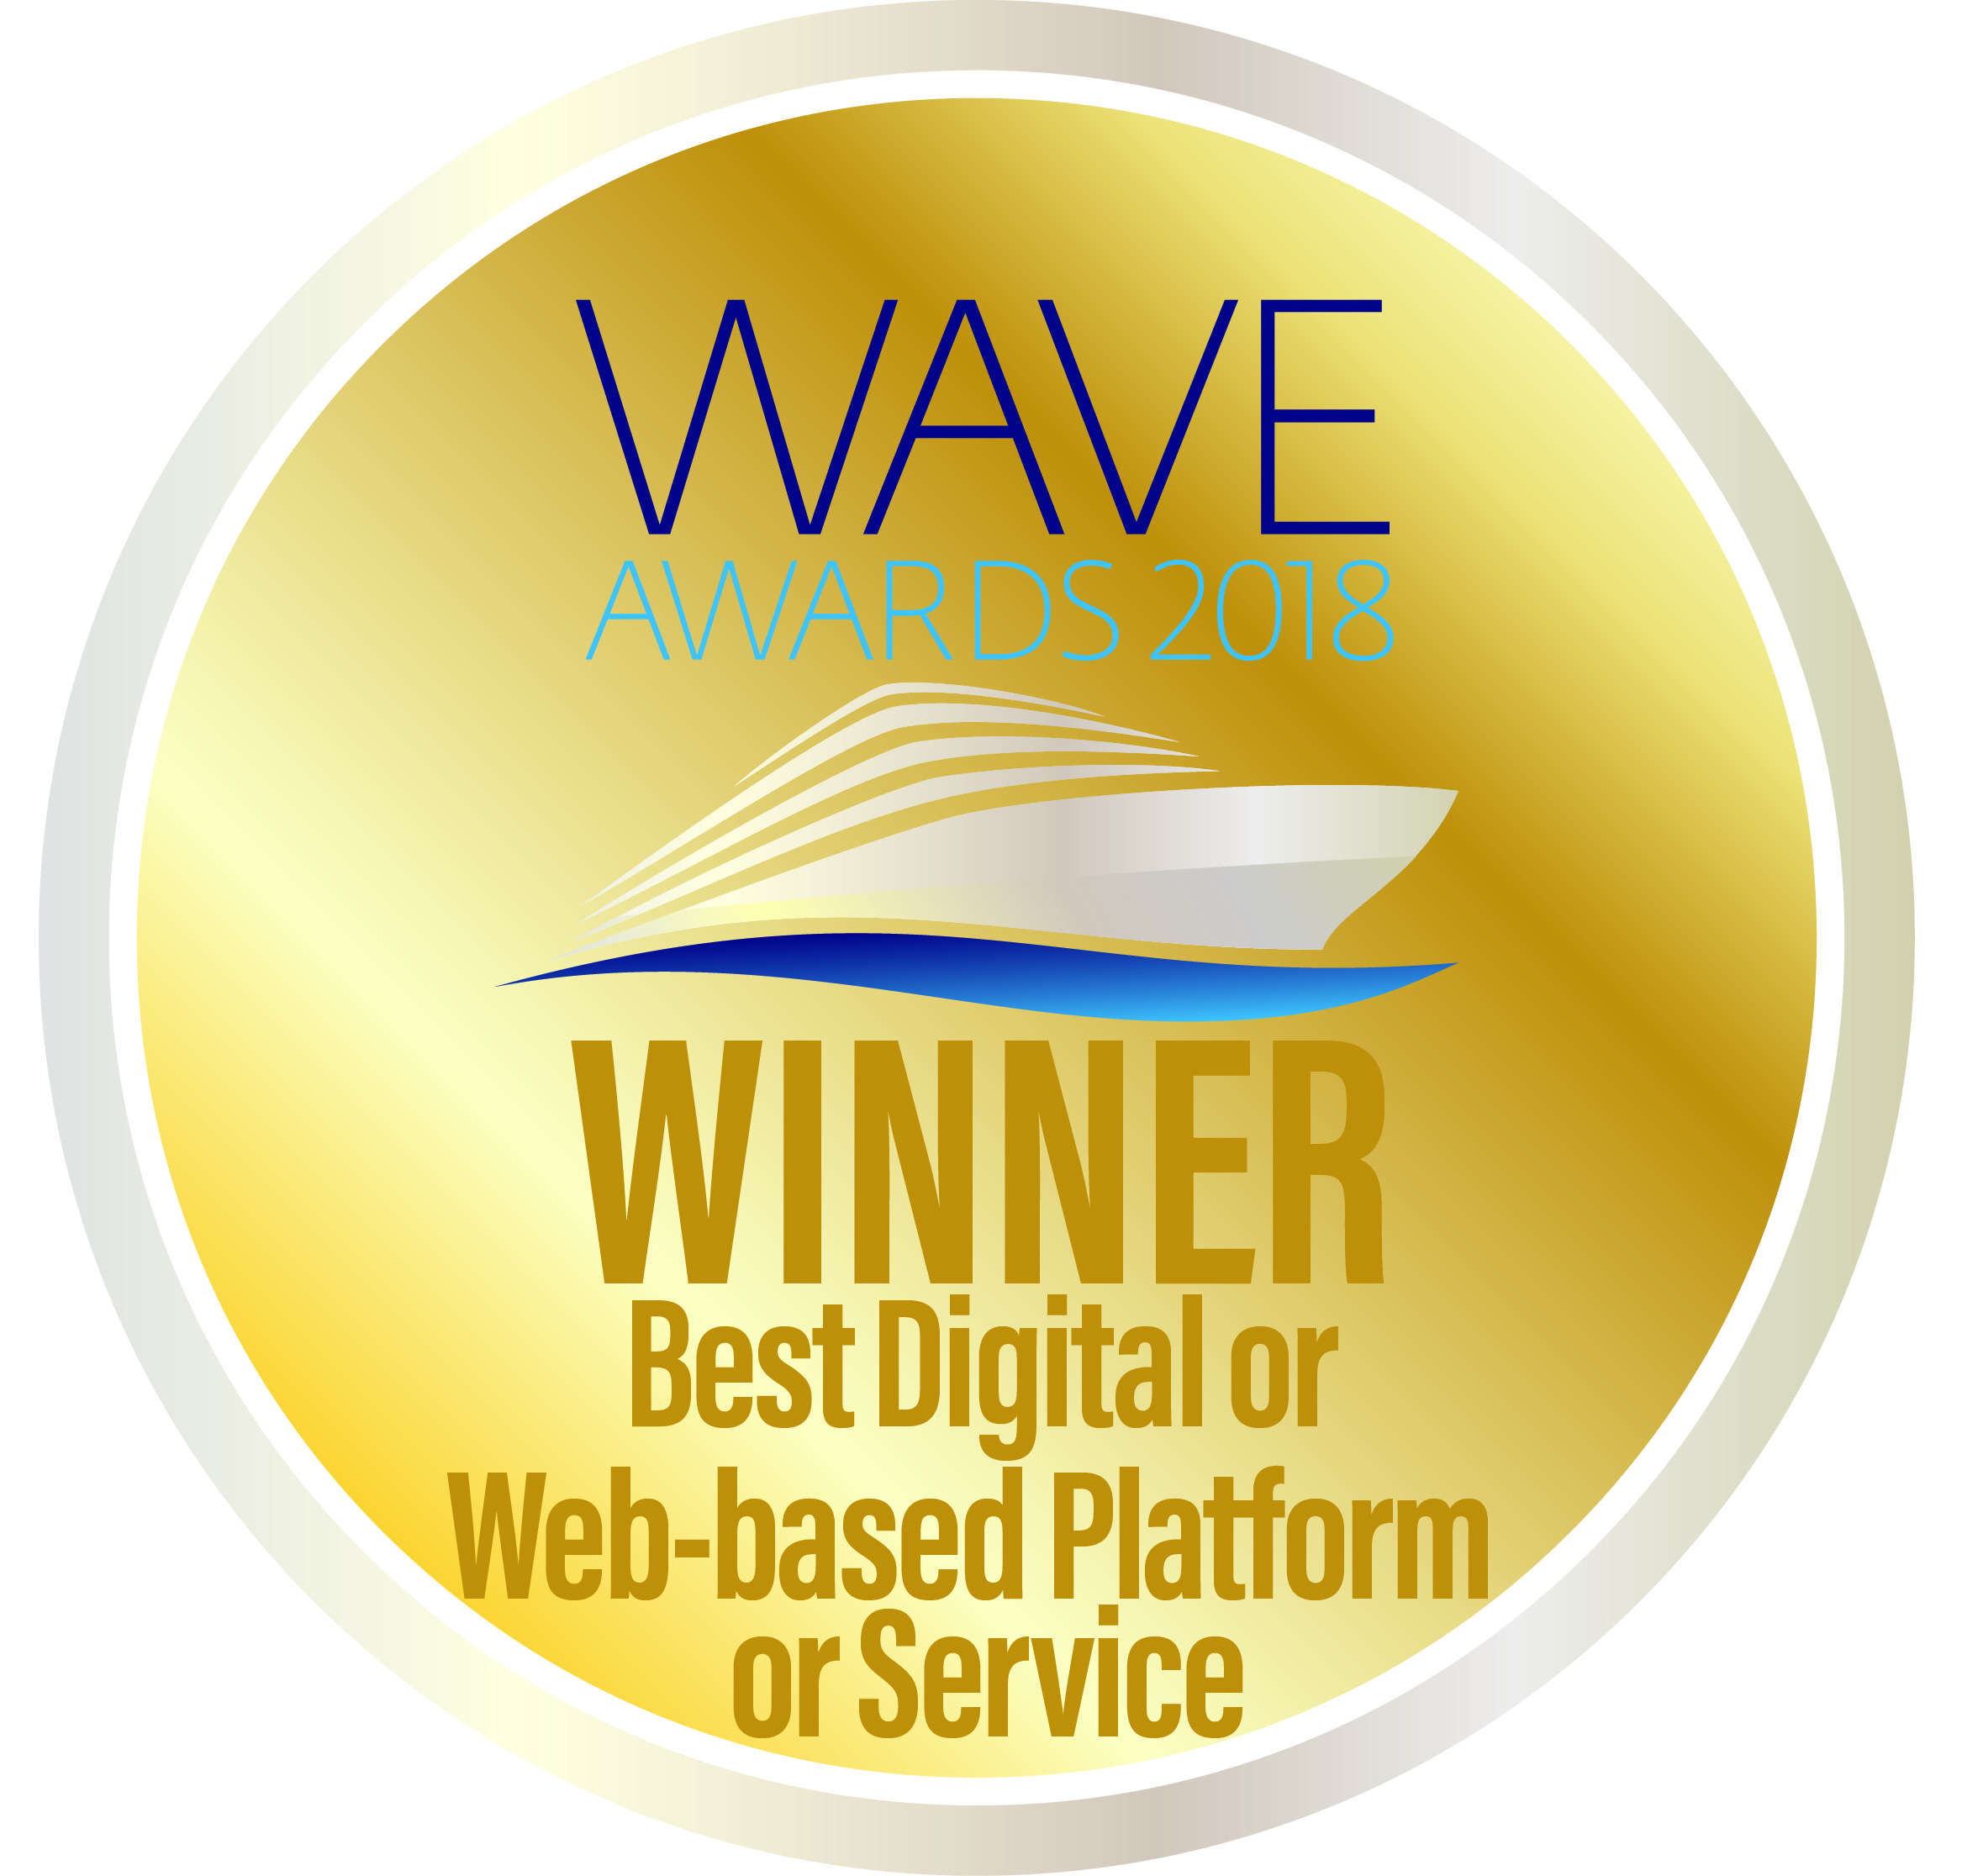 WAVE Awards 2018 - Best Digital Platform Service